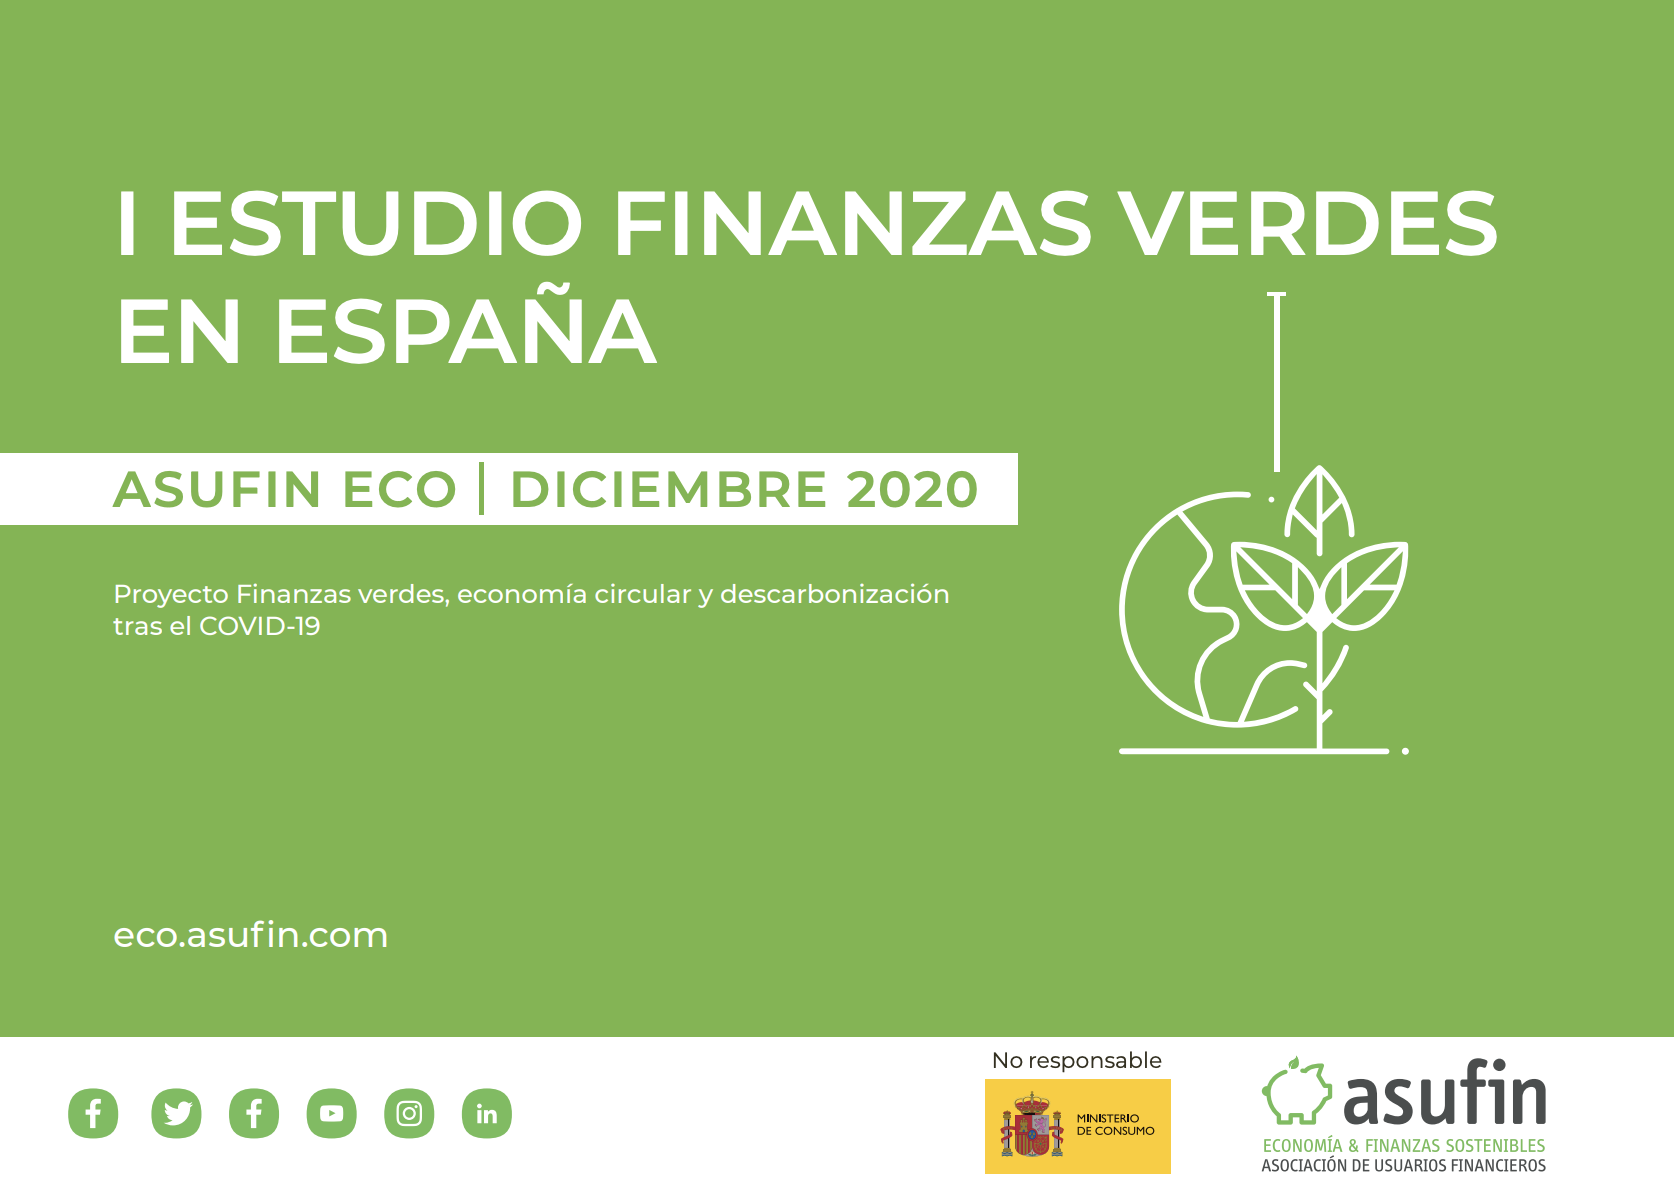 Estudio Finanzas verdes en España